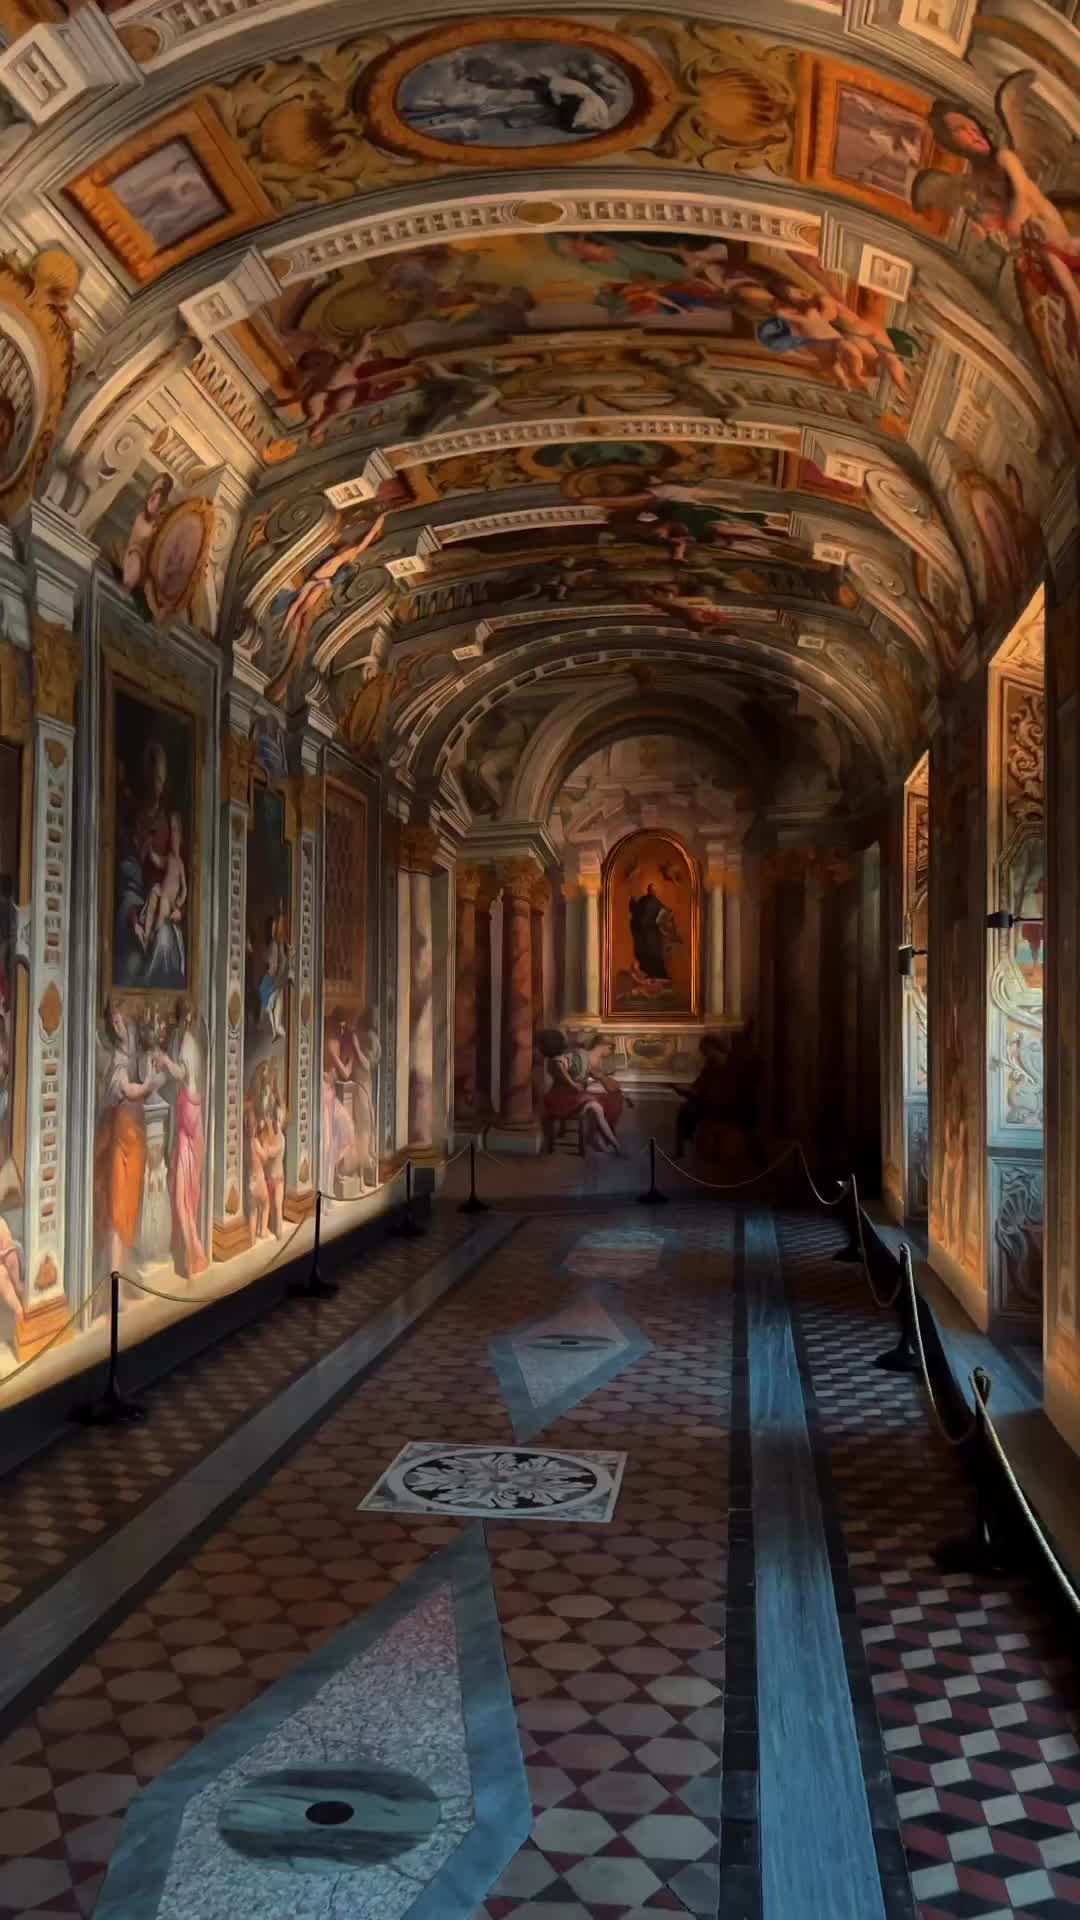 Explore Stanze di Sant’Ignazio in Rome